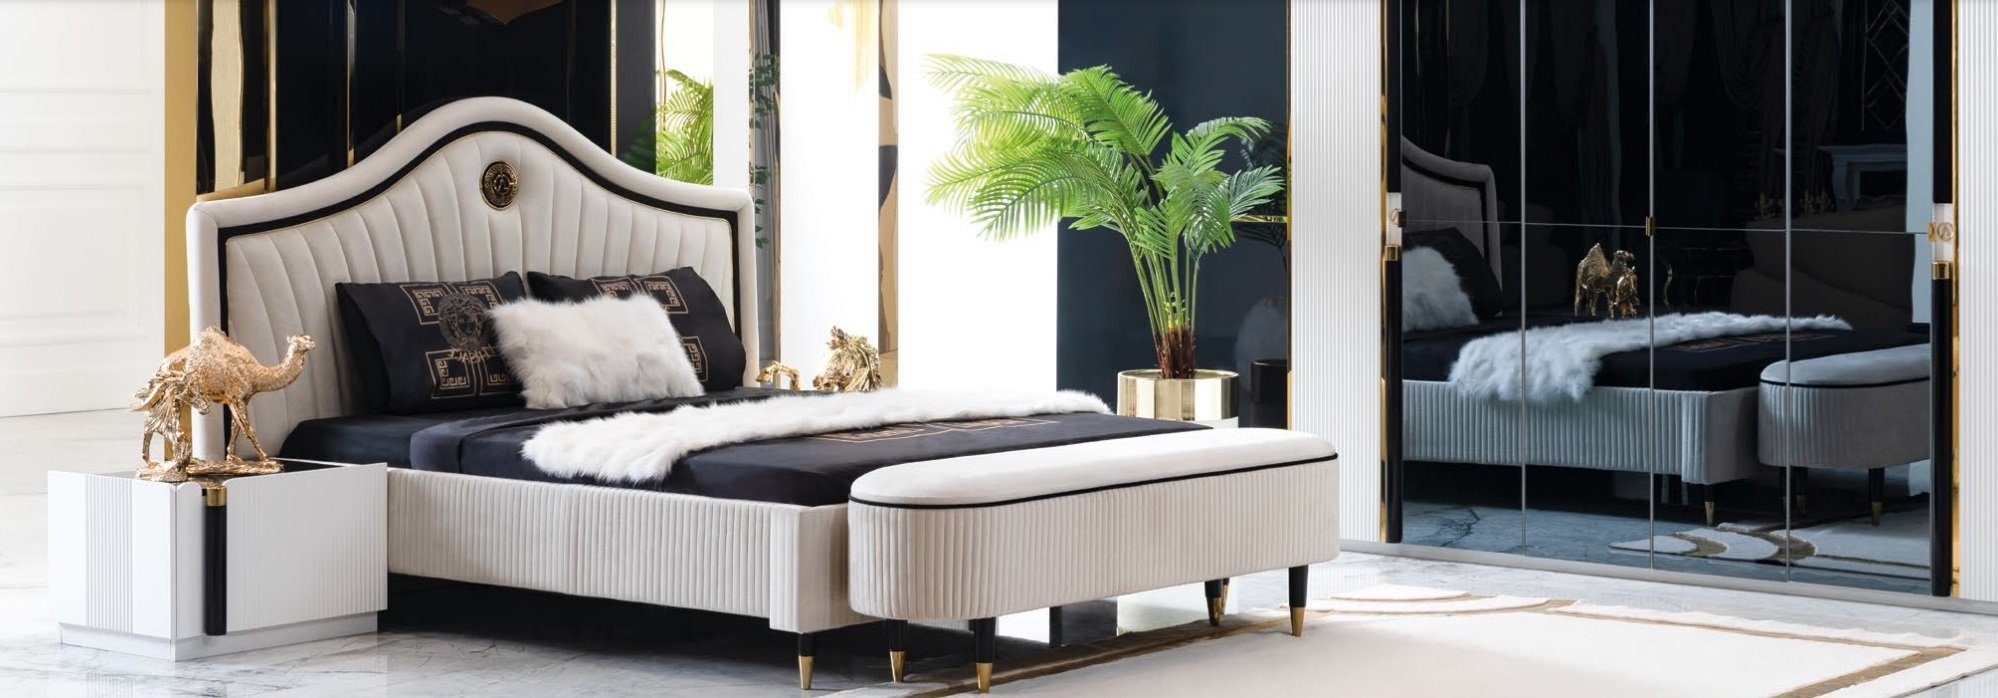 JVmoebel Bett, Schlafzimmer Design Bett Luxus Betten Neu Doppel Polster